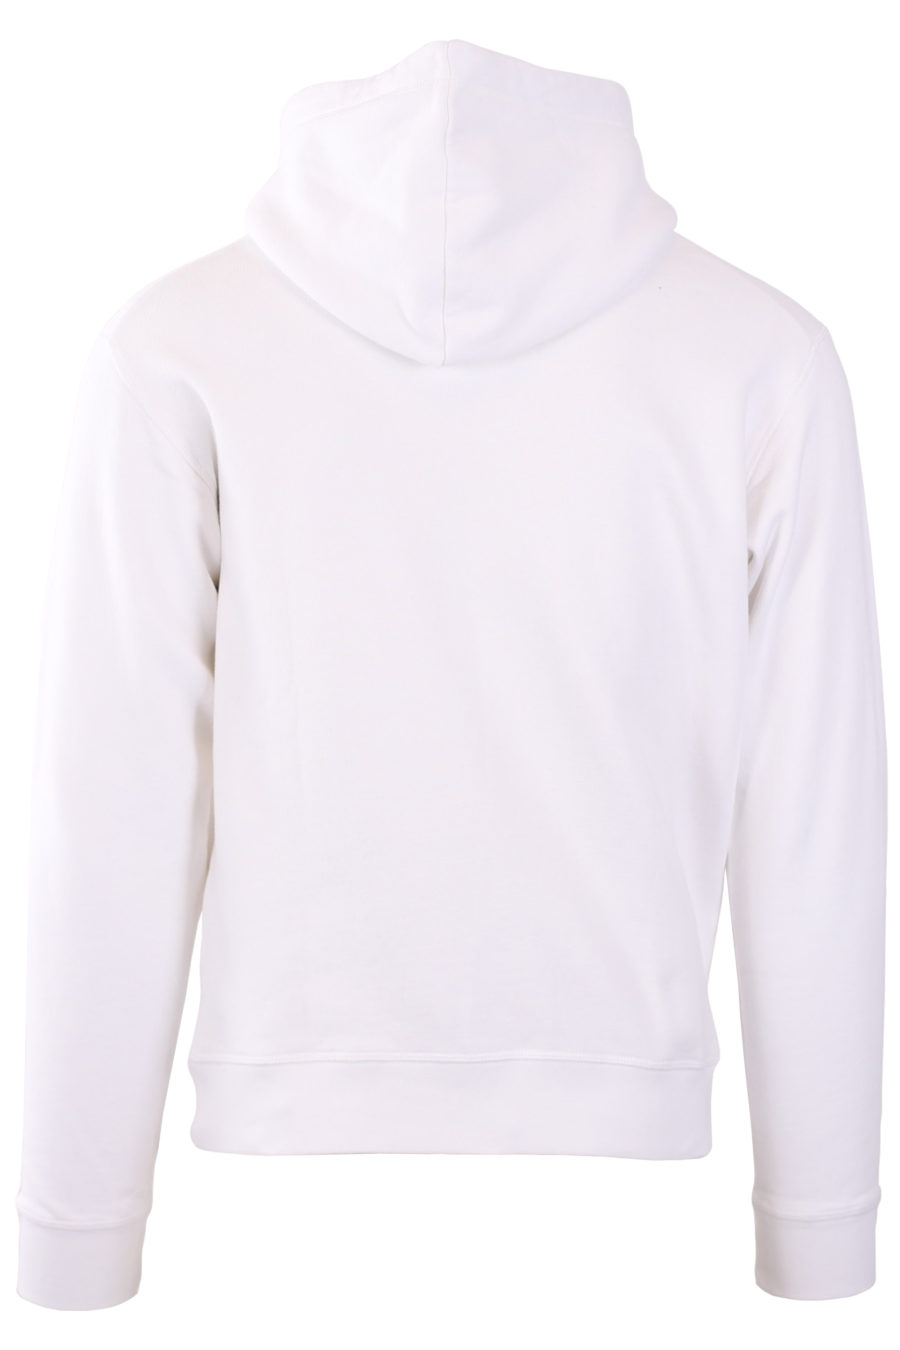 White "Milano" logo hooded sweatshirt - 61dcd242222e145183ad7244a9a40fd5b24c4ad7d3